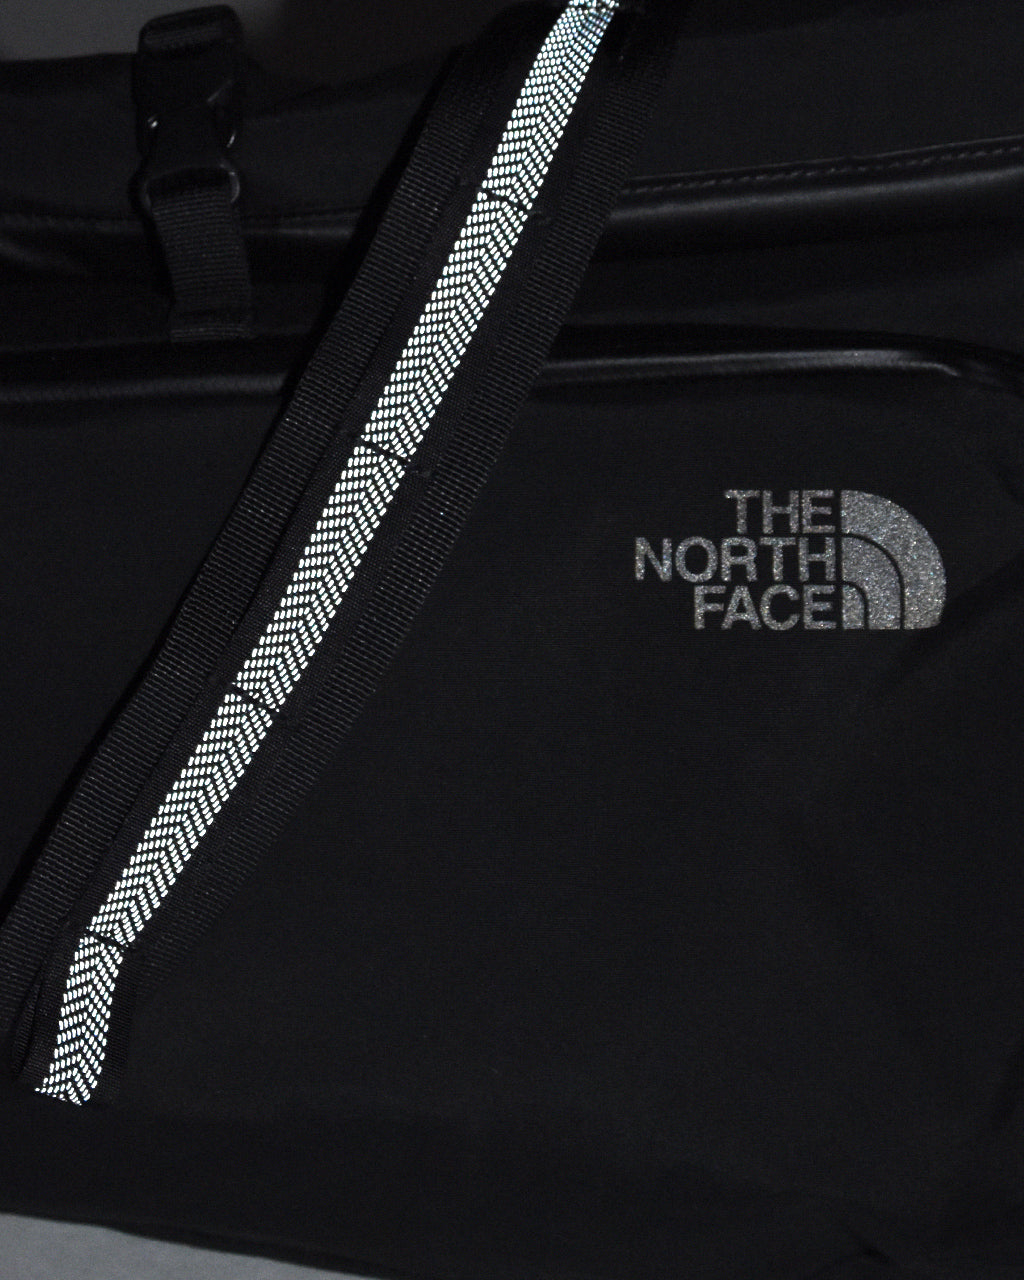 THE NORTH FACE ノースフェイス ロール パック 15 Roll Pack 15 ショルダーバッグ 鞄  NM82389【送料無料】